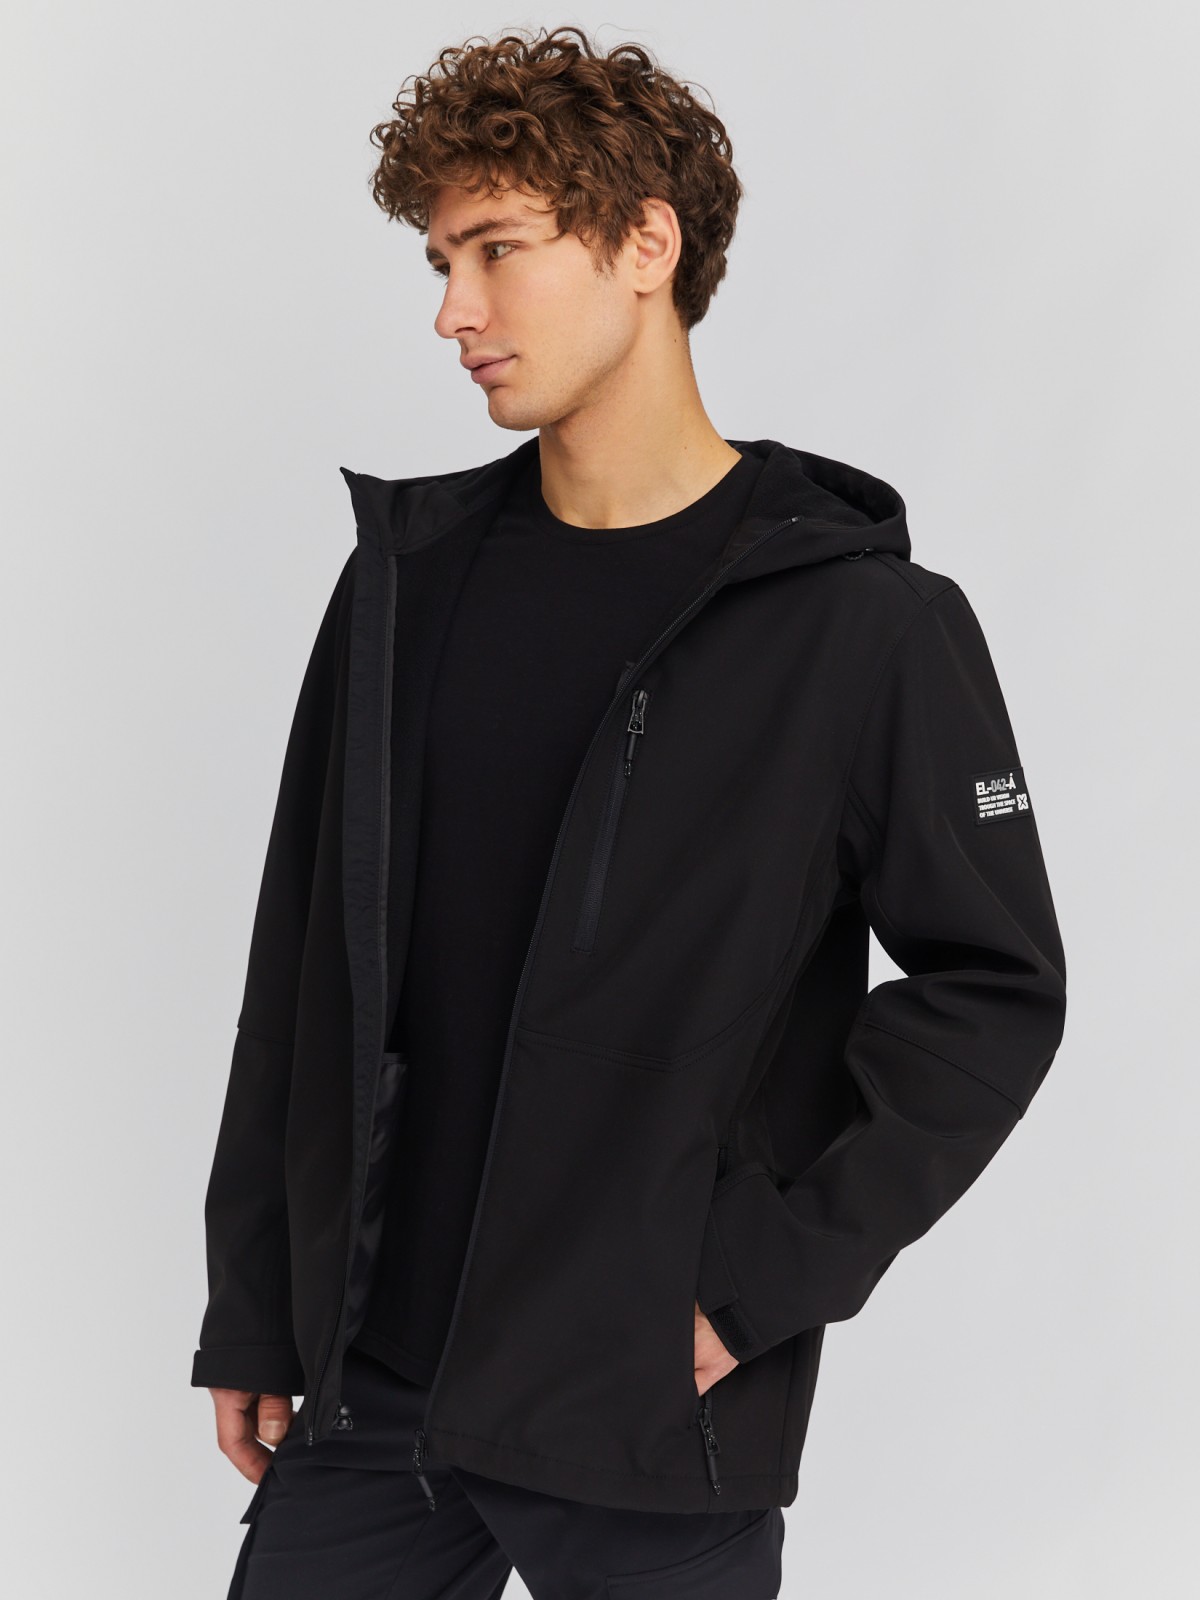 Лёгкая куртка-ветровка с капюшоном zolla 014135602014, цвет черный, размер M - фото 1